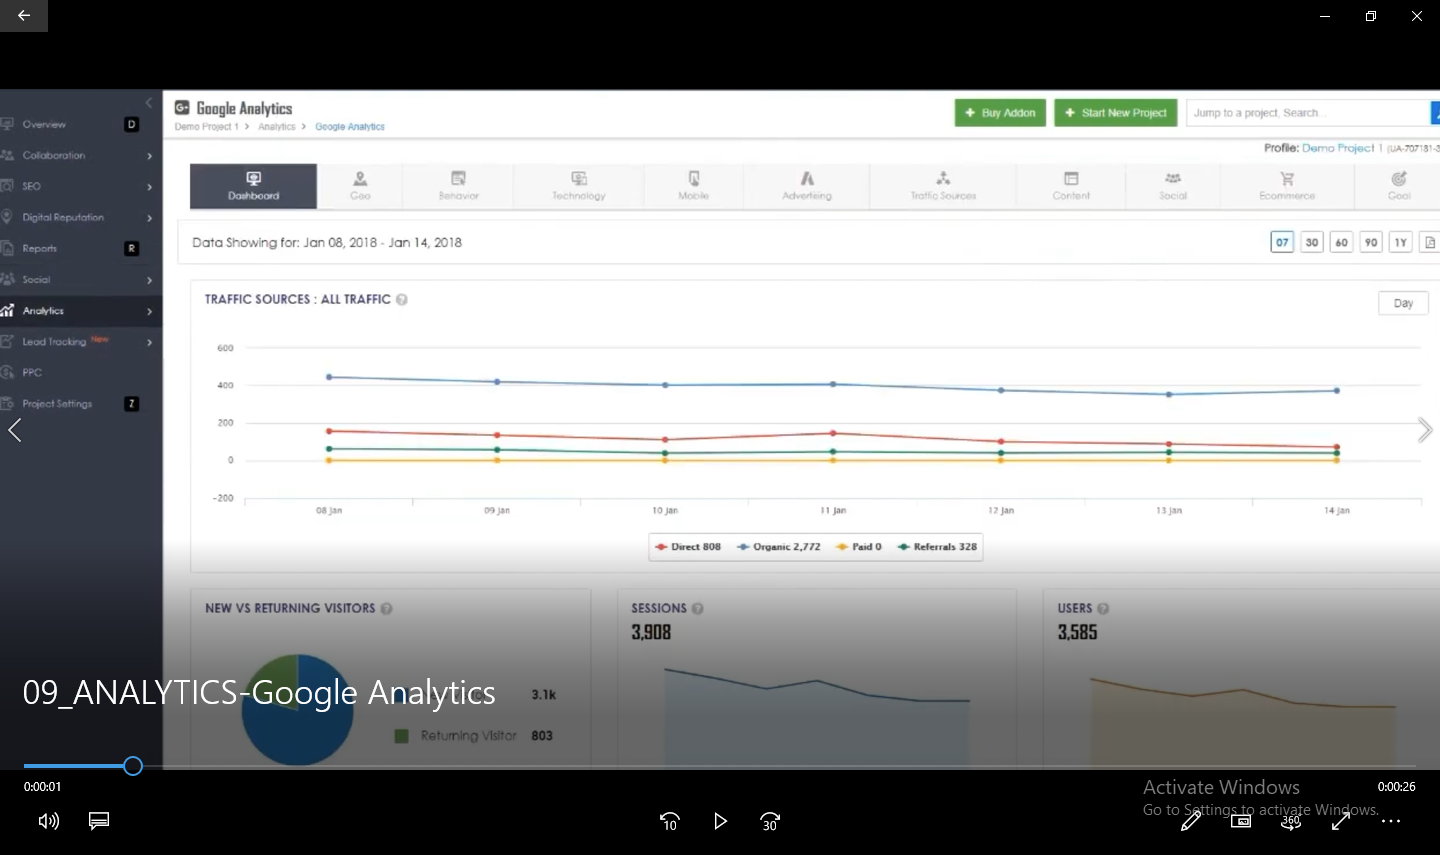 09_ANALYTICS-Google Analytics-thumbnail